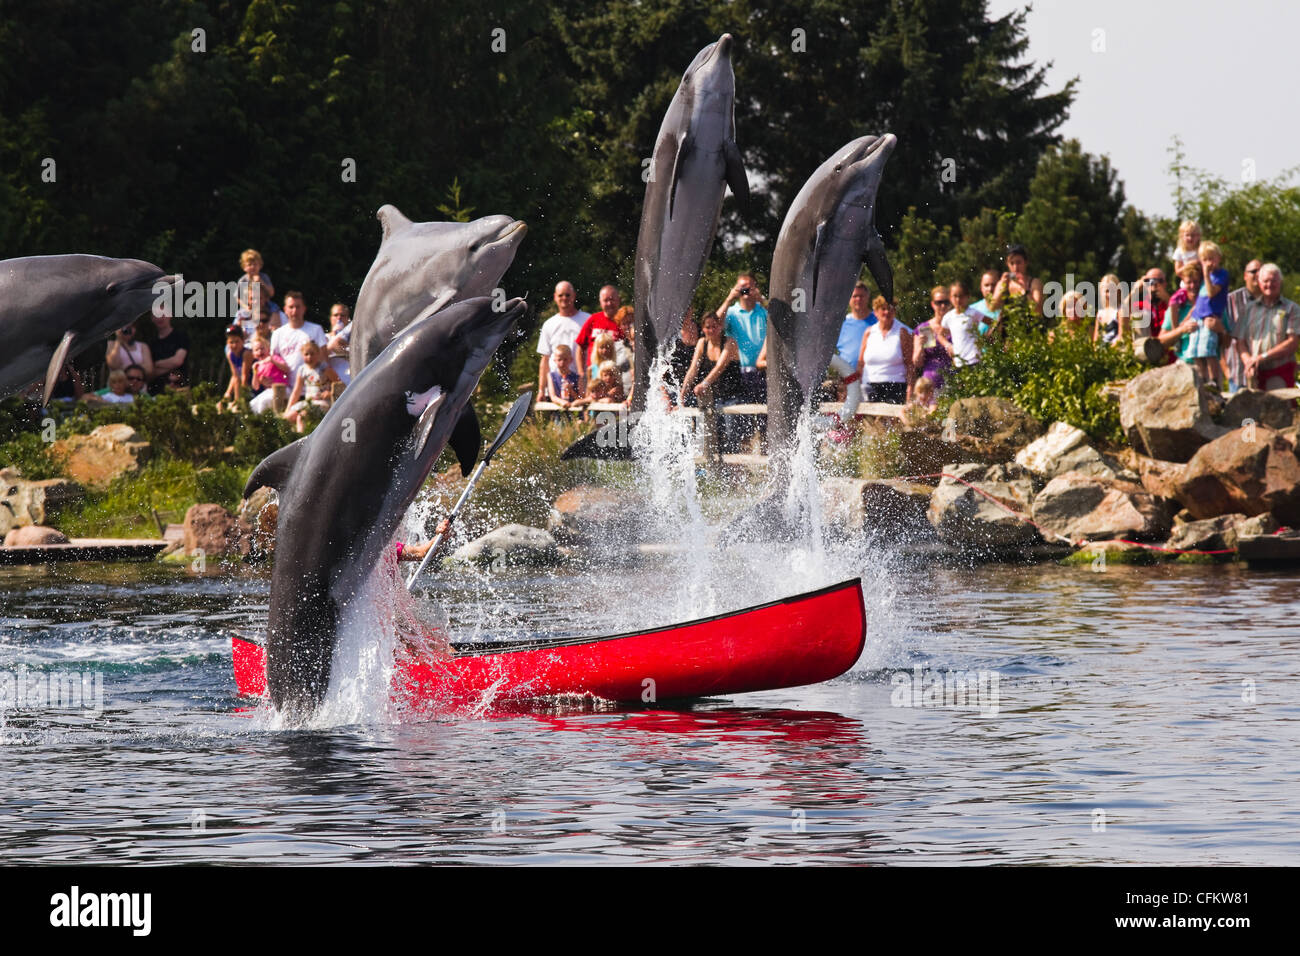 Femmina detentore dei delfini in barca a remi per divertirsi con i delfini jumping alta al di fuori dell'acqua. Foto Stock